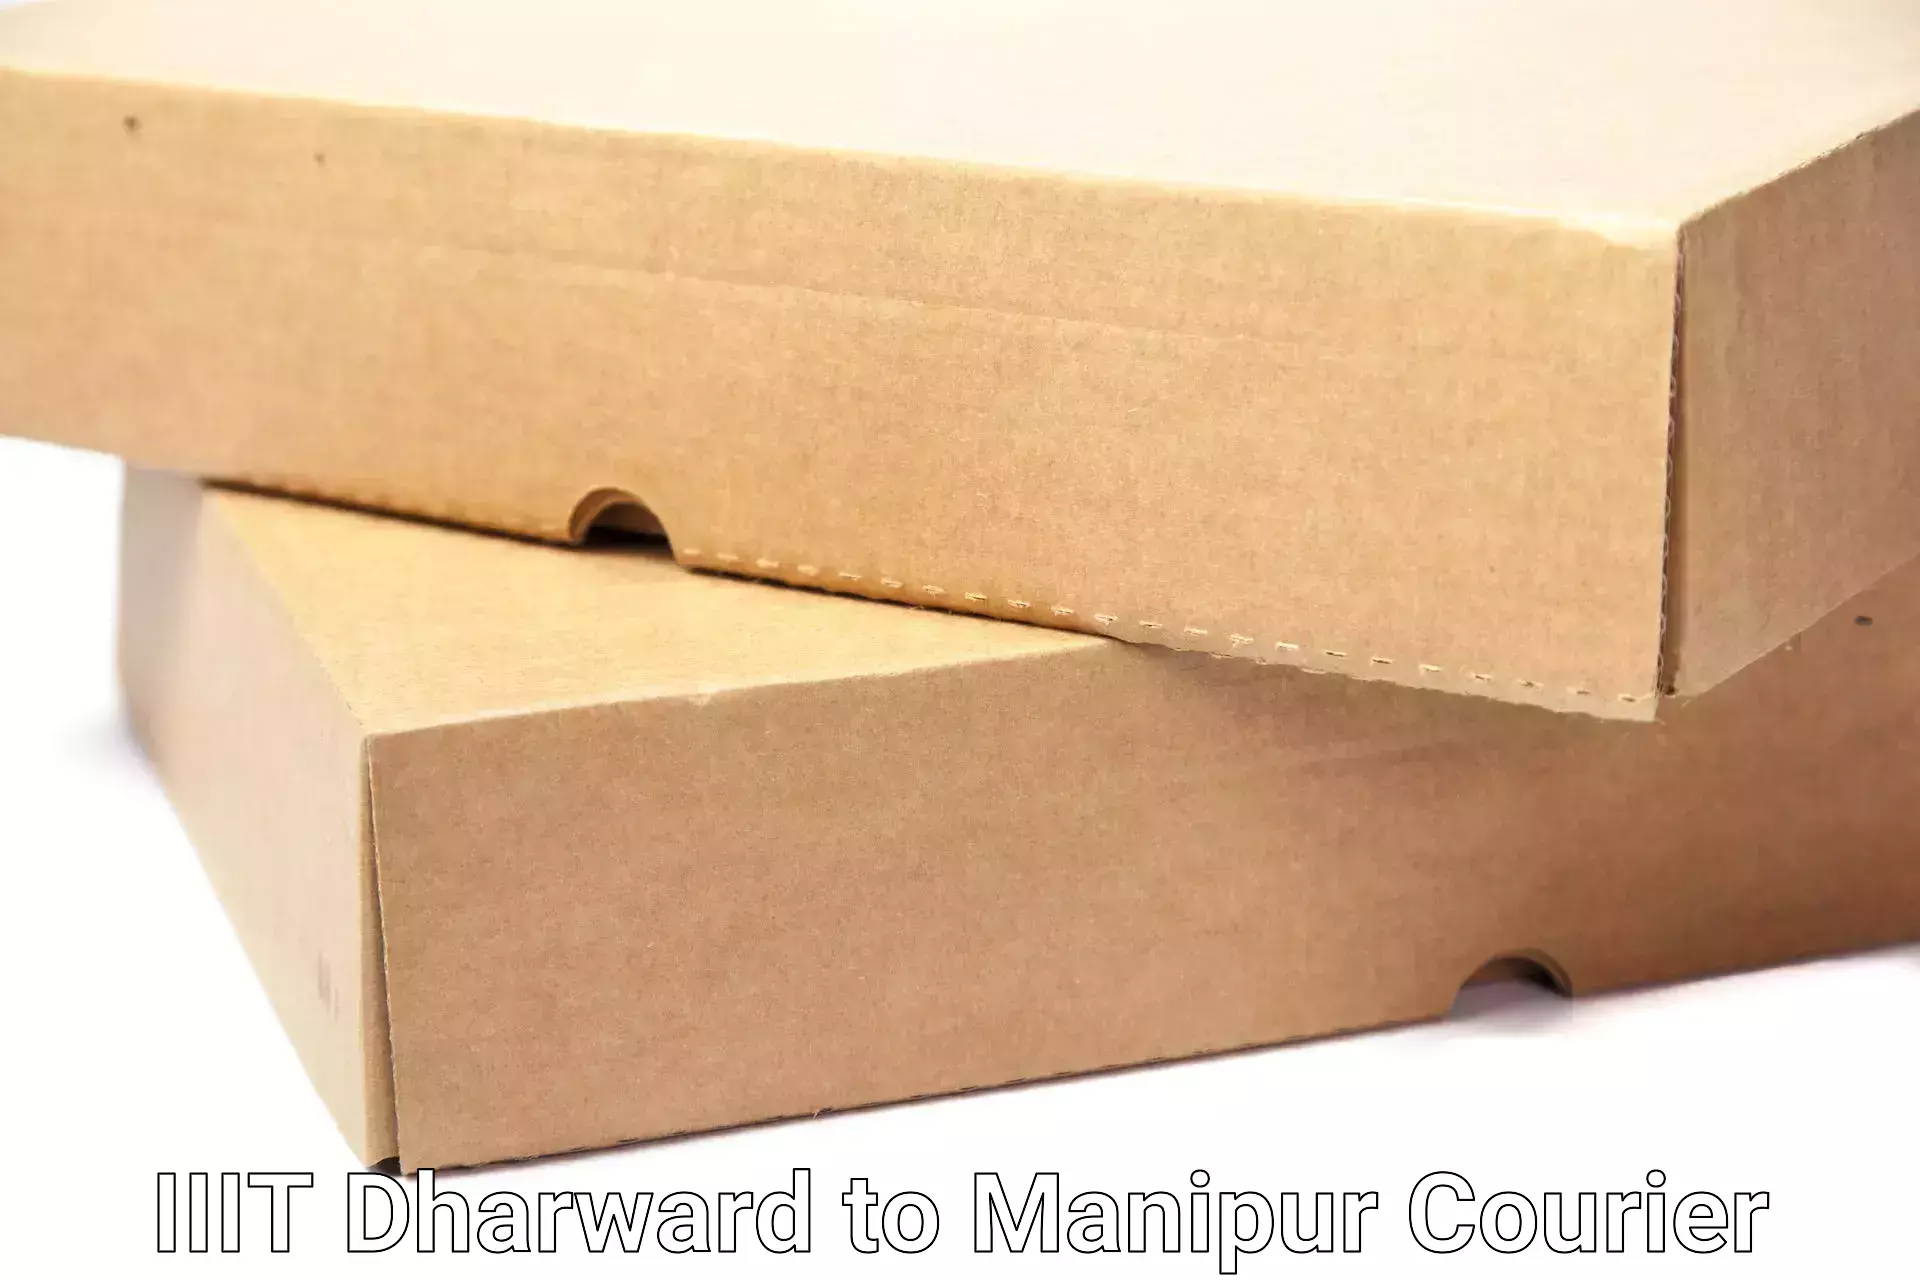 Efficient home movers IIIT Dharward to Chandel